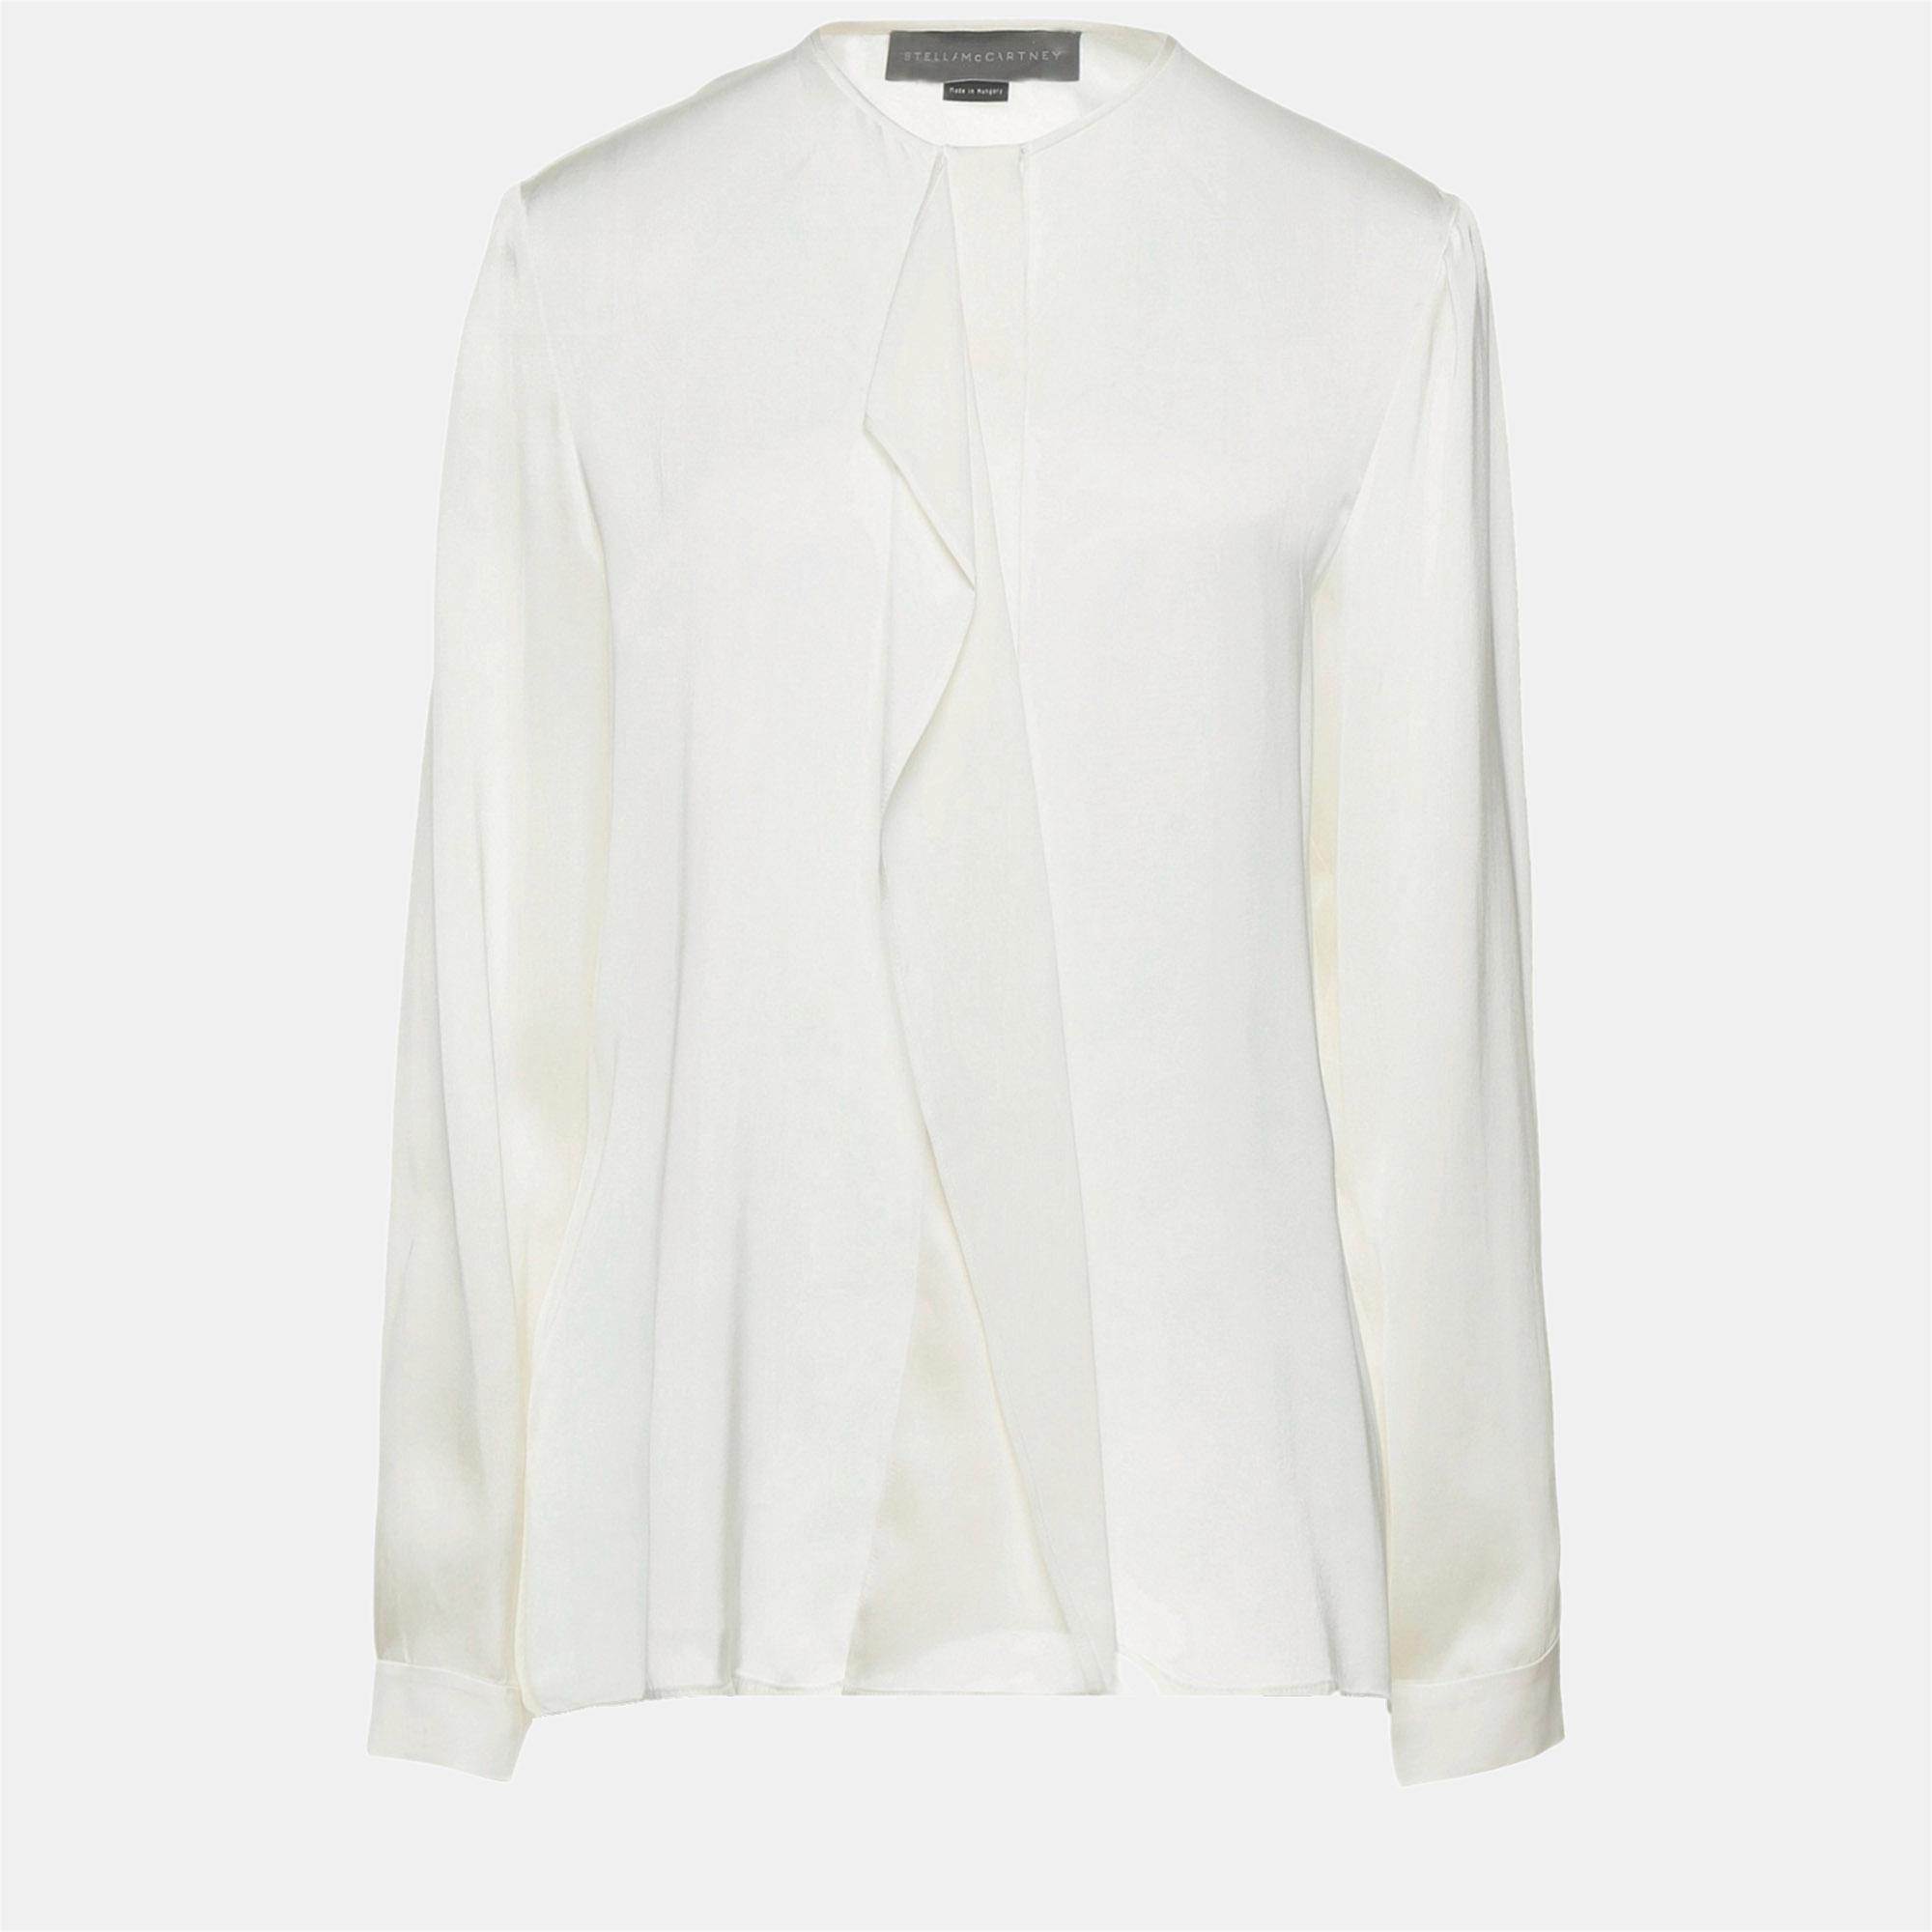 Stella mccartney white silk blouse xl (it 46)